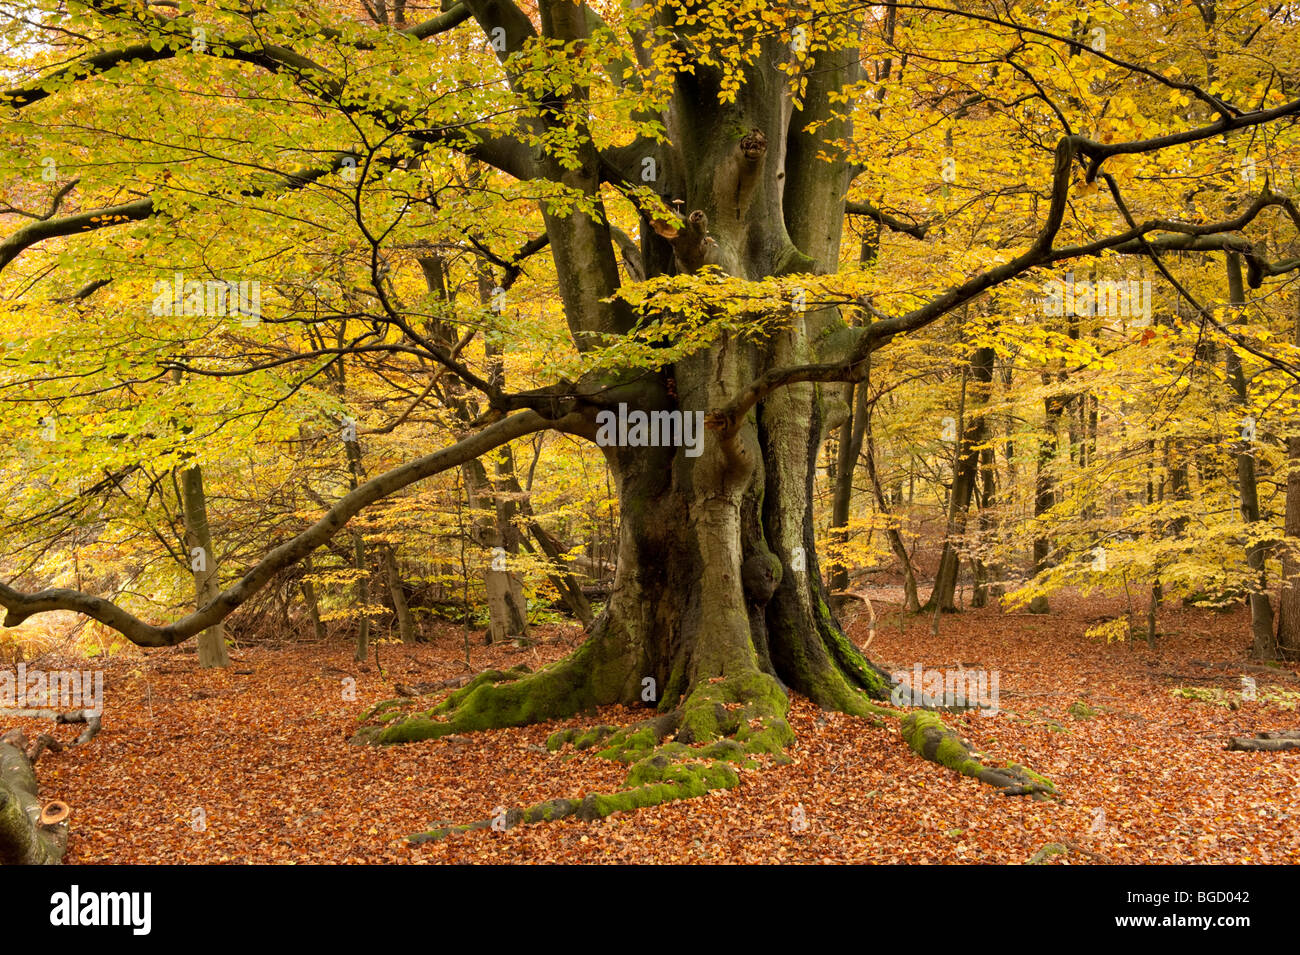 Il faggio in autunno, riserva naturale, Sababurg foresta vergine, Reinhardswald, Hofgeismar, Nord Hesse, Hesse, Germania, Europa Foto Stock